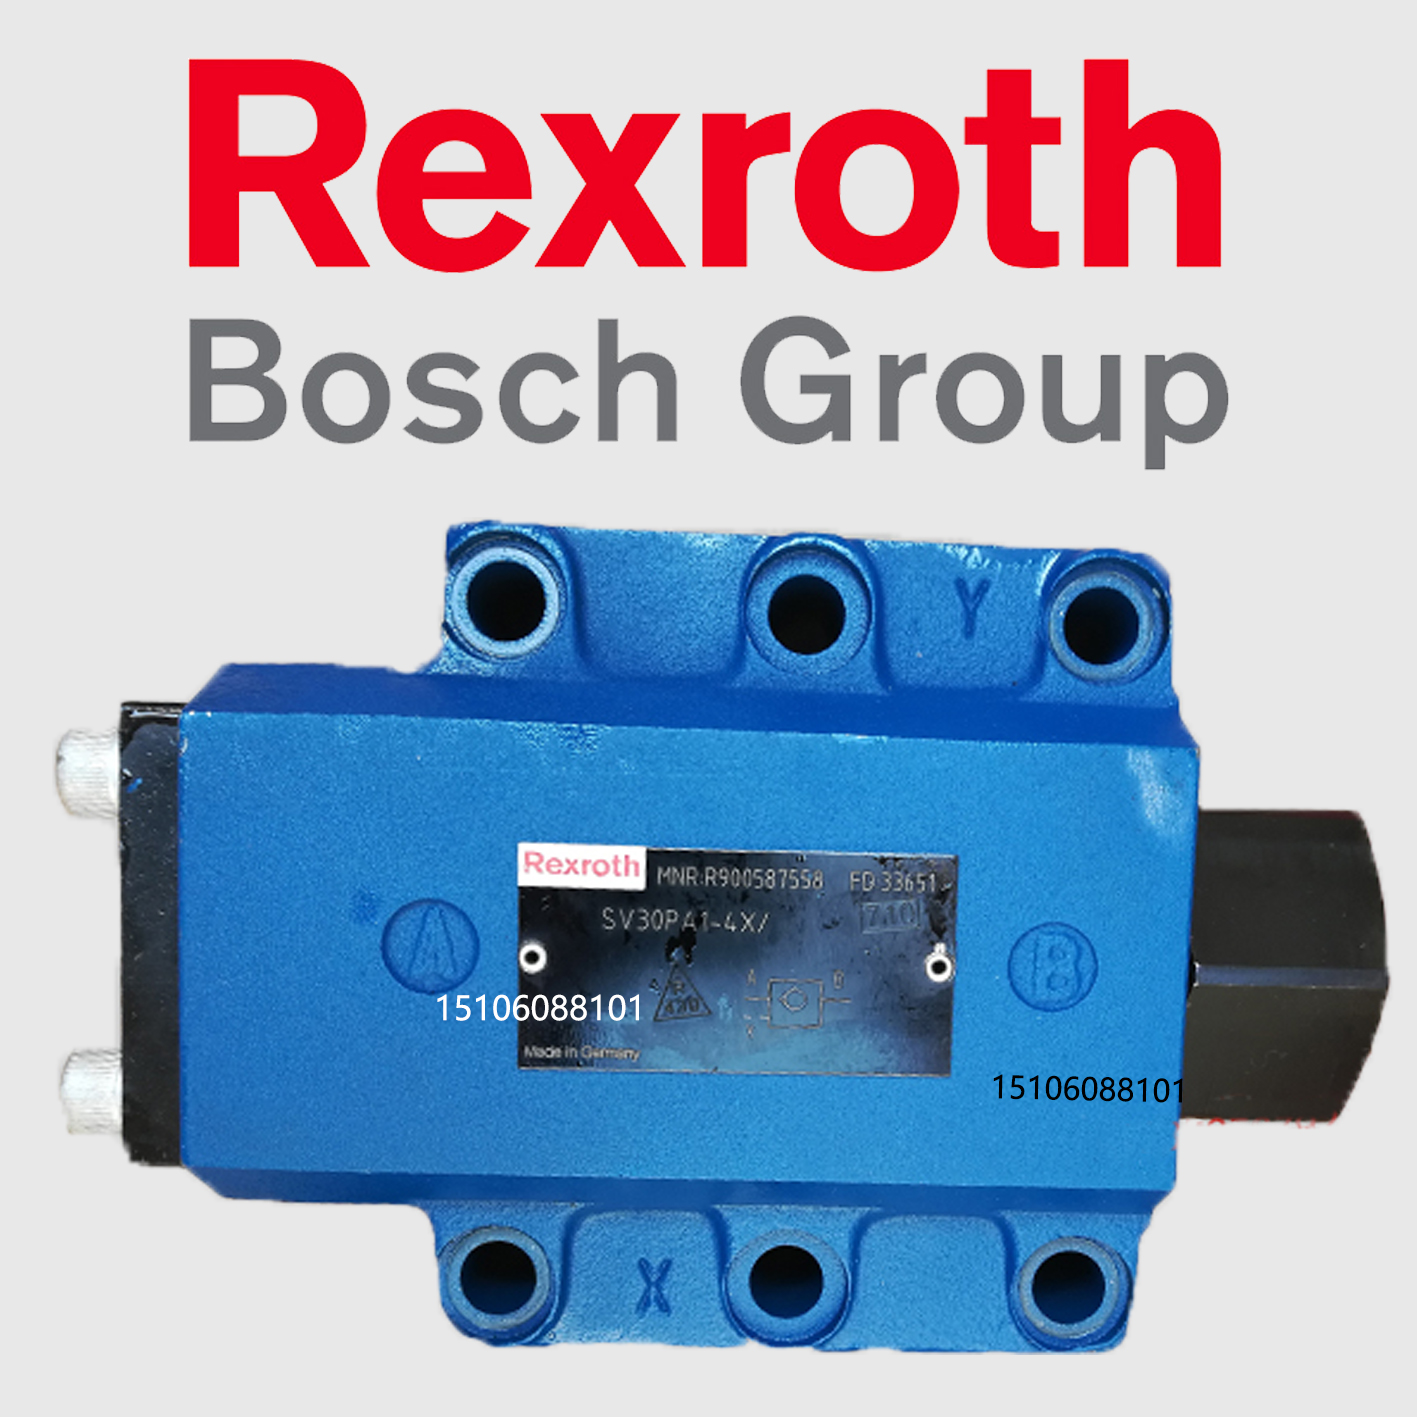 Rexroth力士乐SV30PA2液控单向阀SV30PB1-4X液压锁SL30PB2 PA1-42